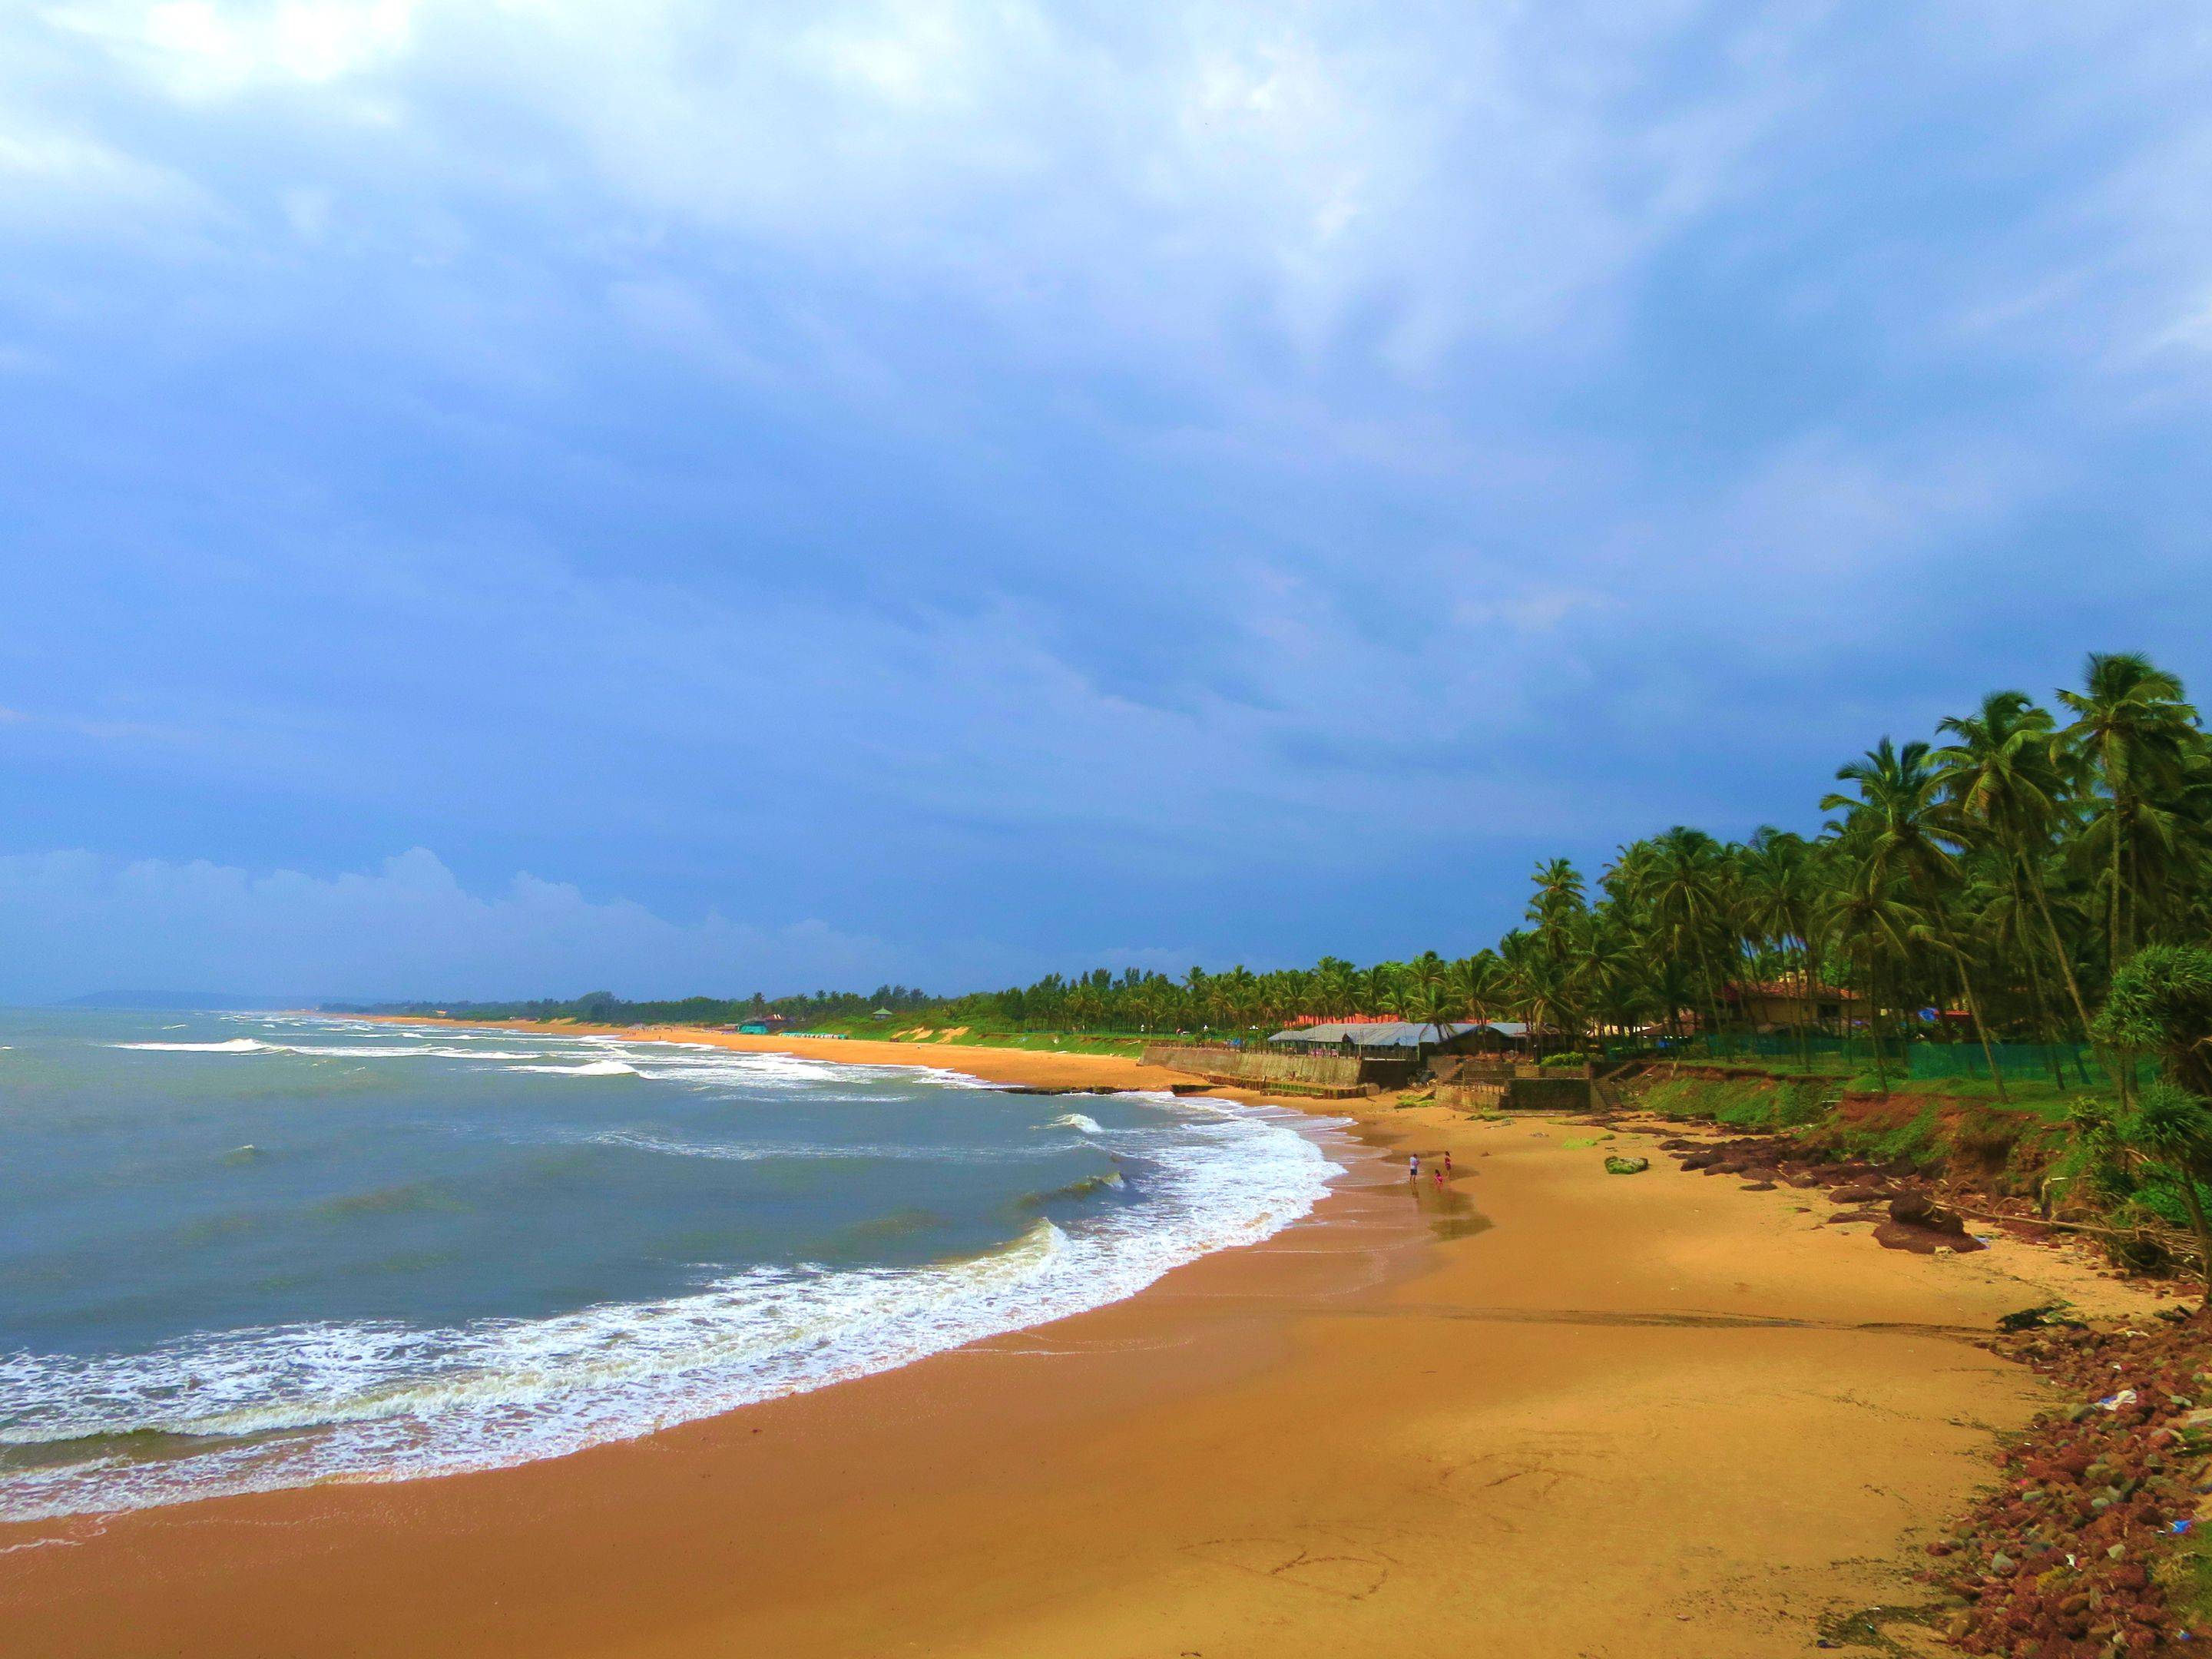 Arrivée à Goa, aux superbes plages 